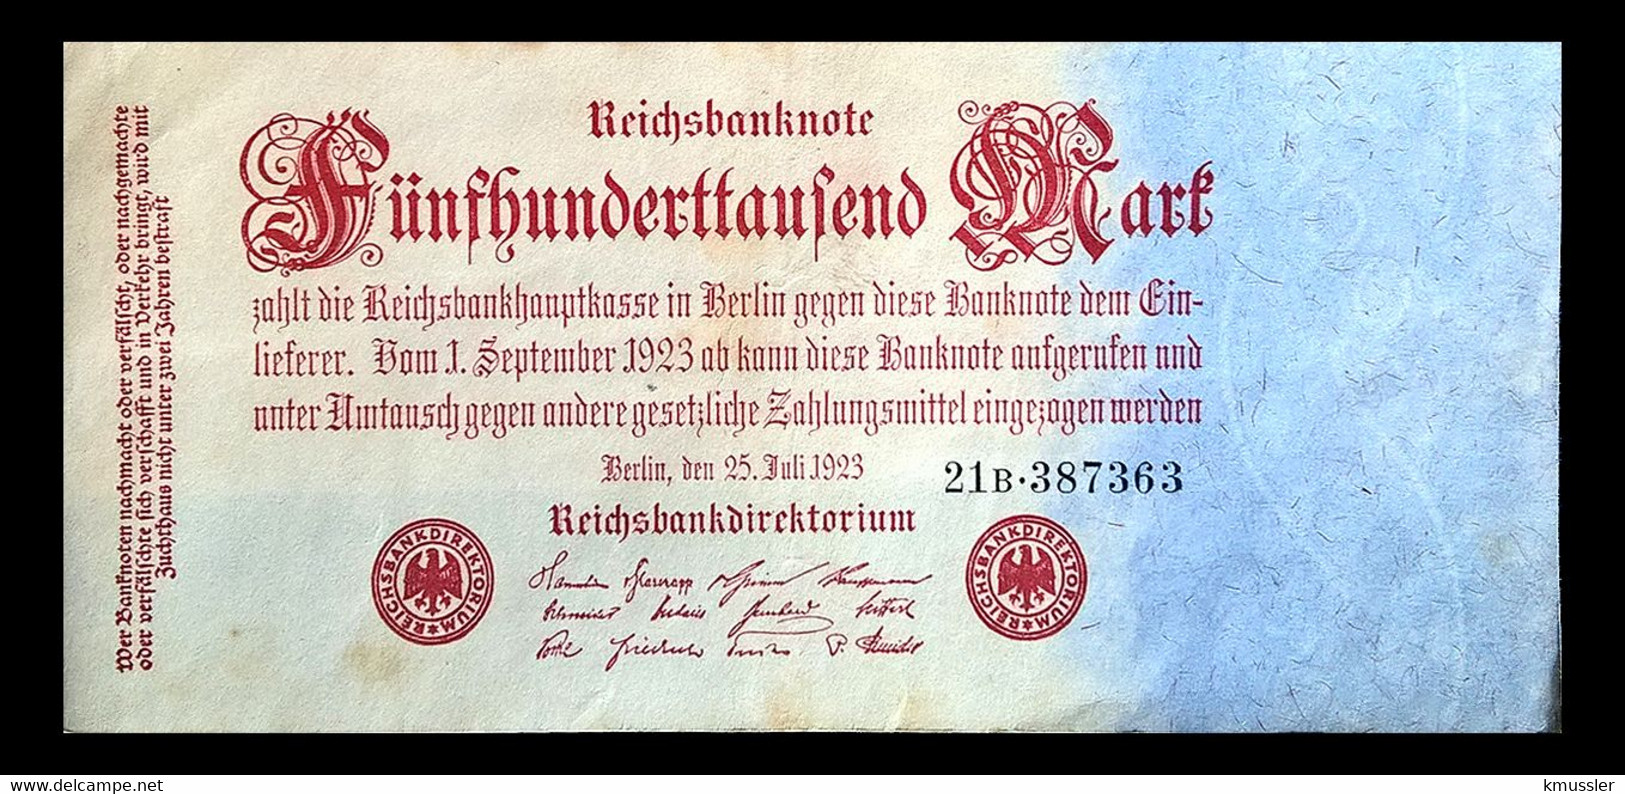 # # # Banknote Deutsches Reich (Germany) 500.000 Mark 1923 # # # - 500.000 Mark